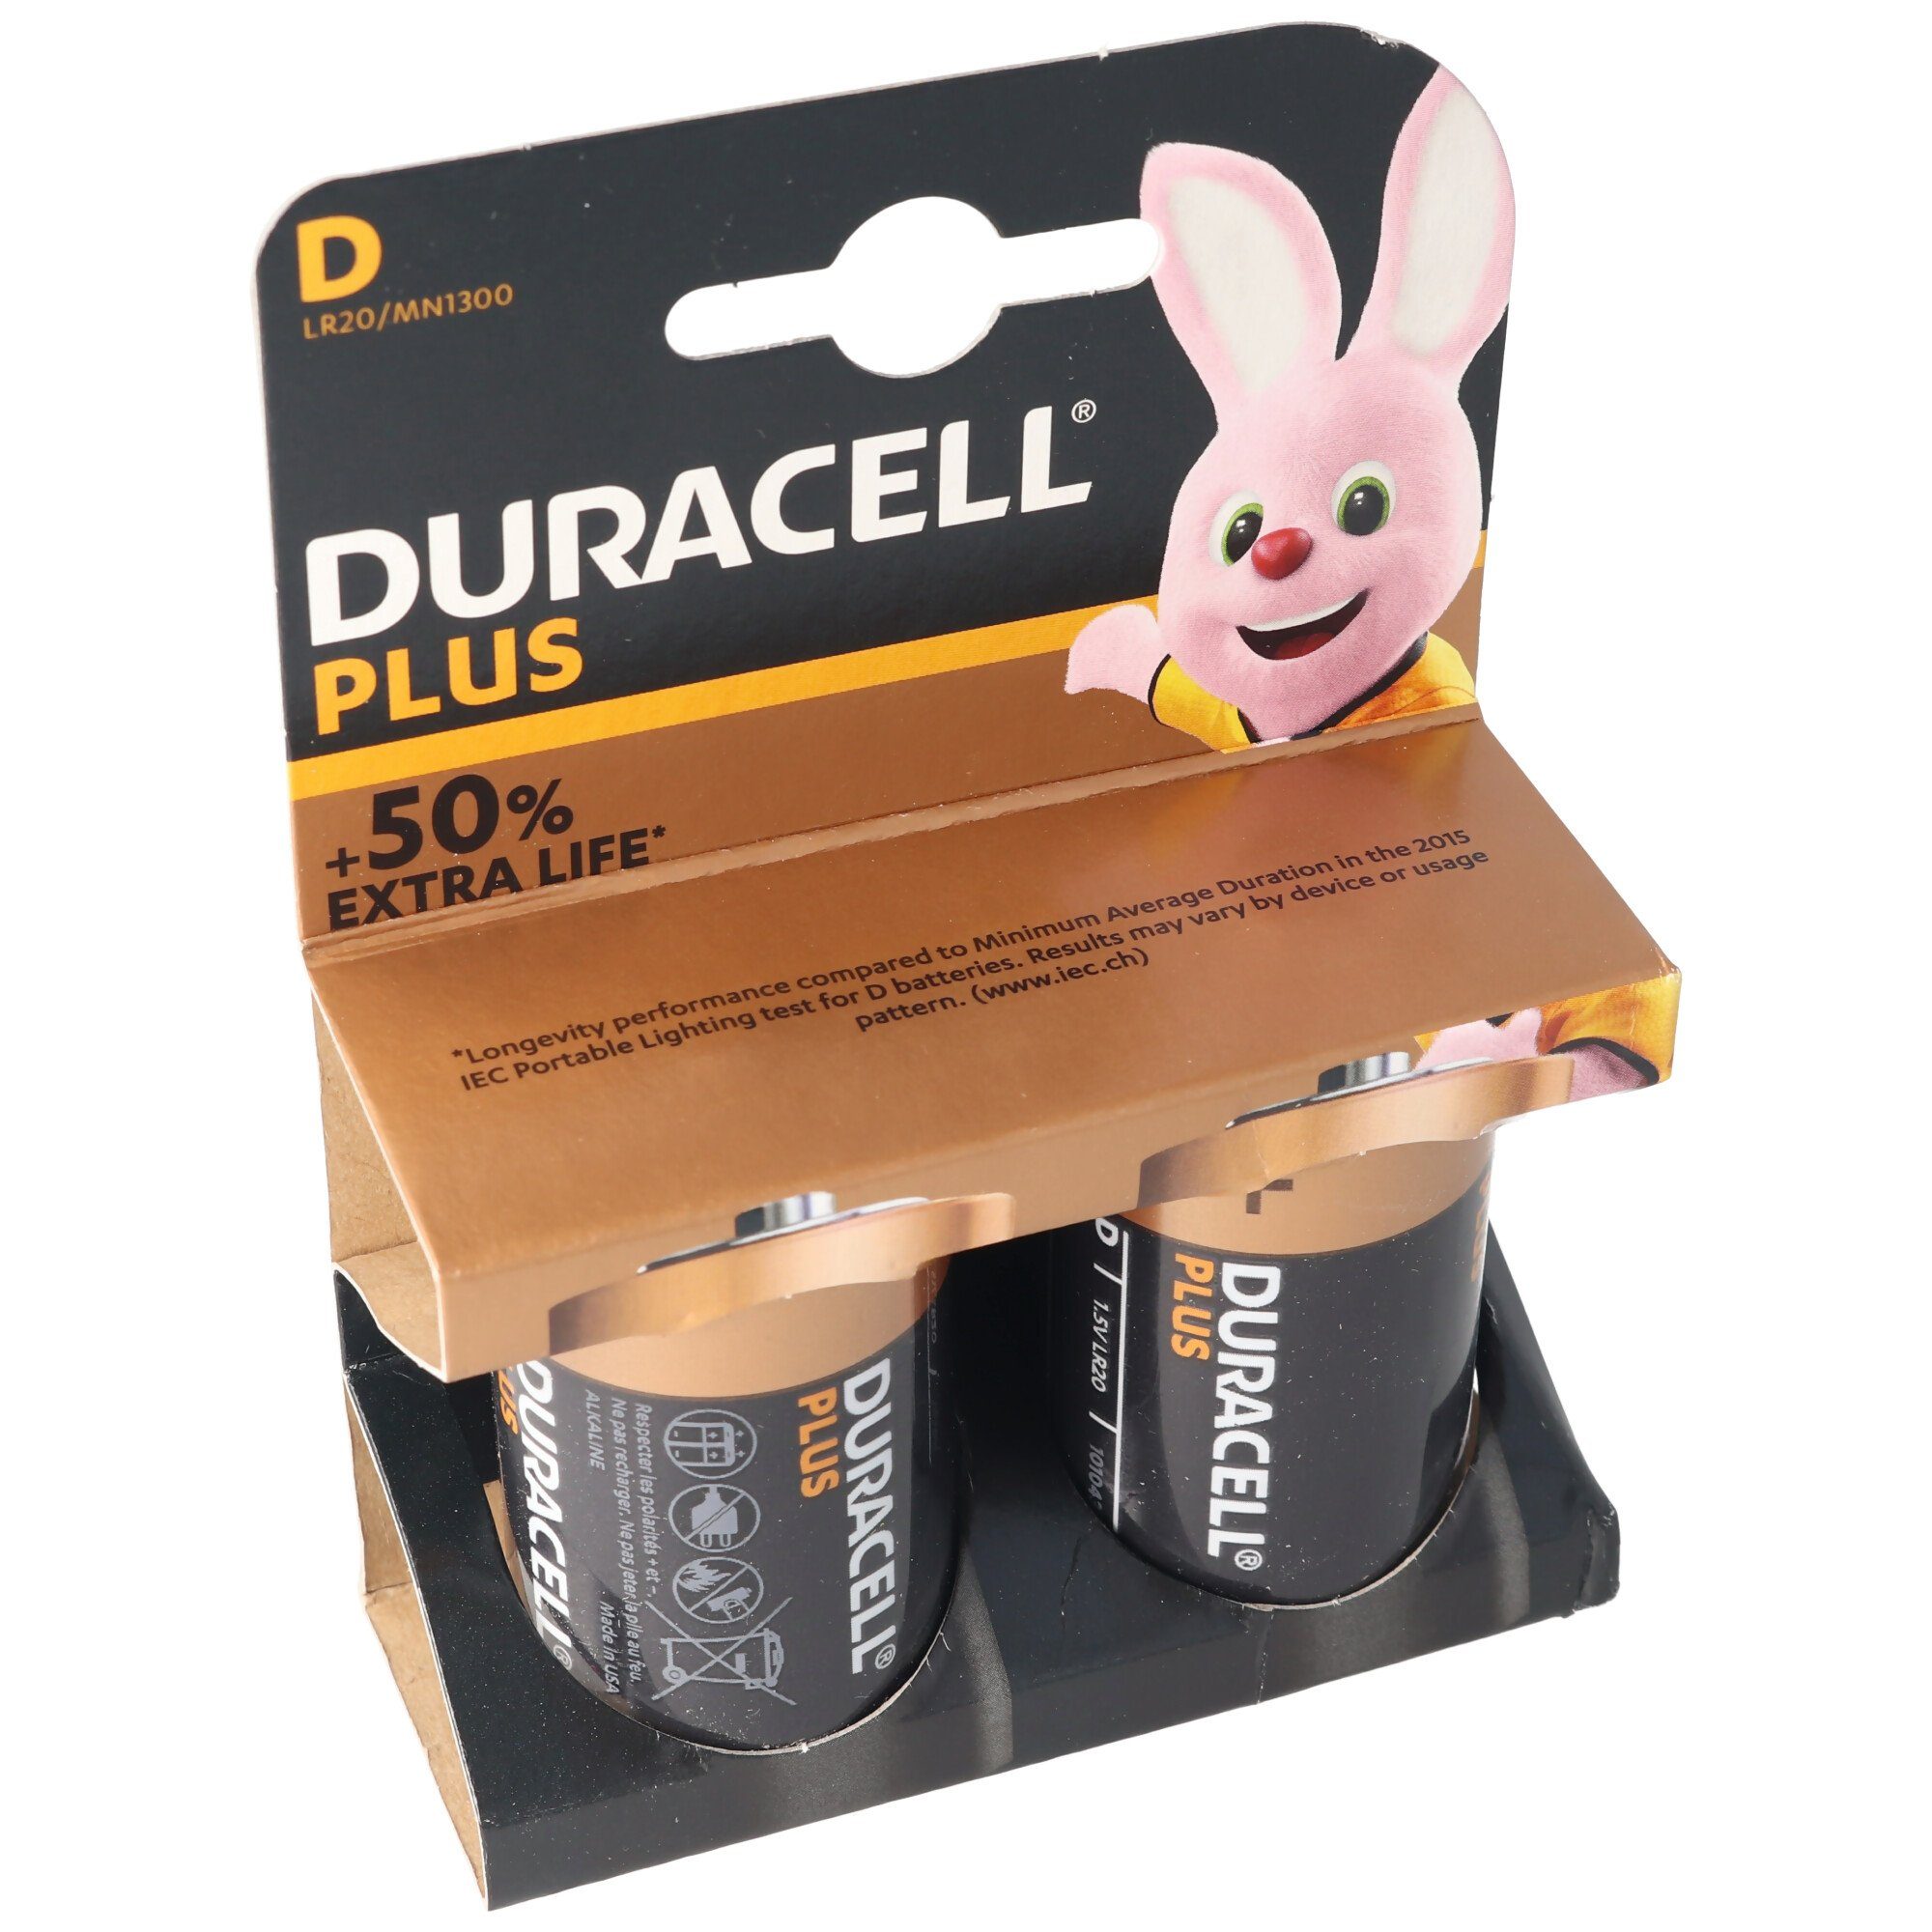 DURACELL Plus V) Batterie, Pack 2er Duracell Mono/D/LR20 (1,5